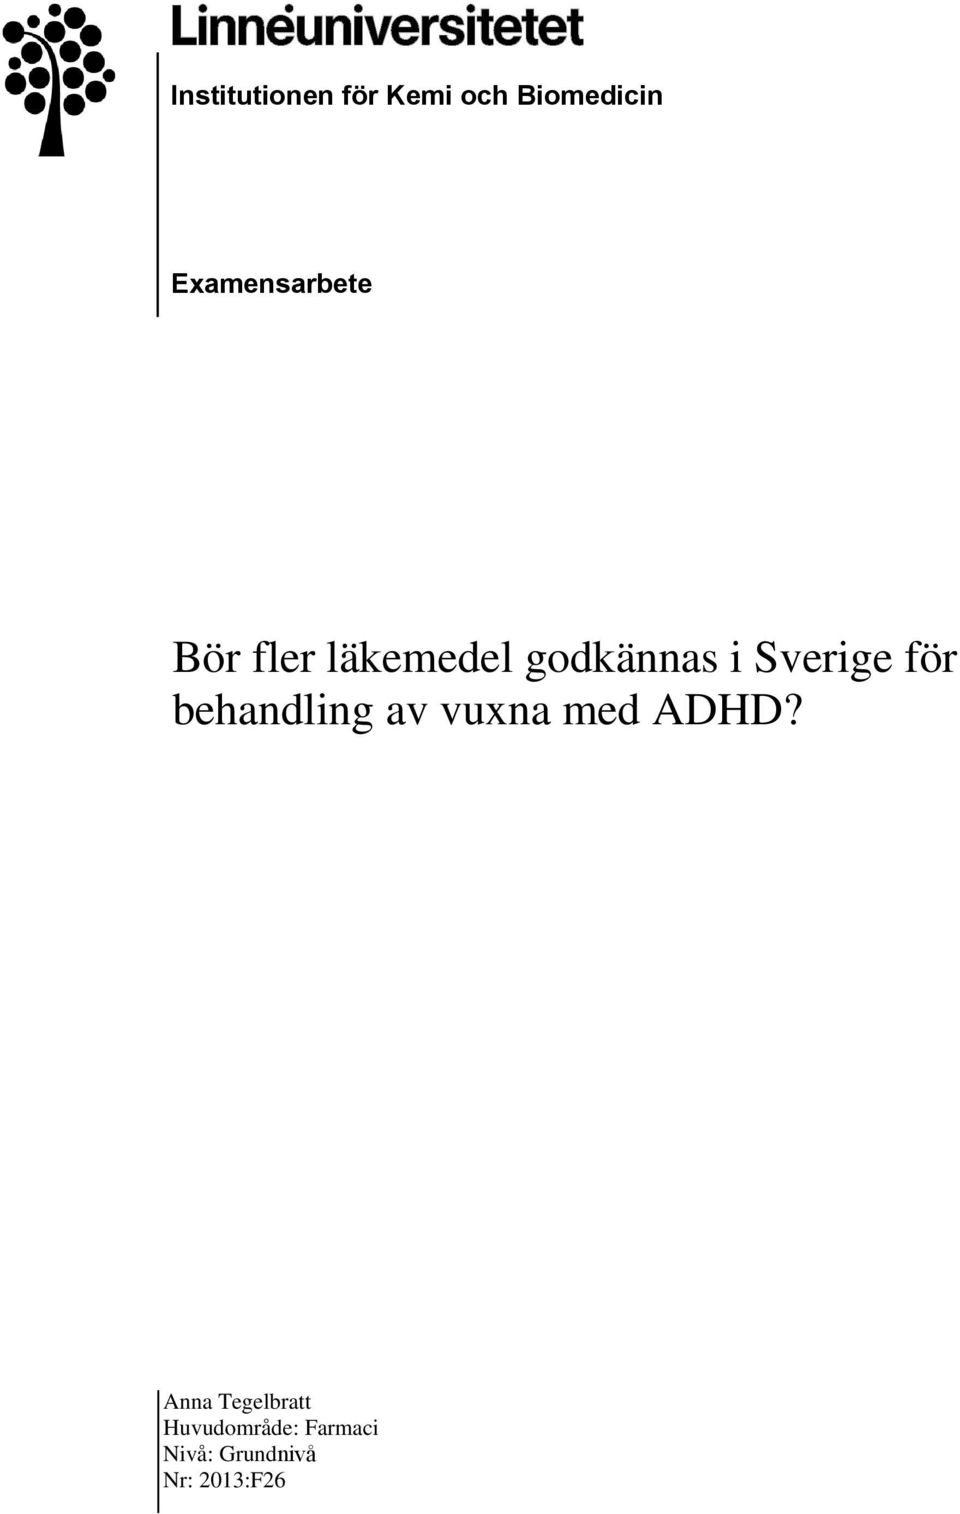 Sverige för behandling av vuxna med ADHD?